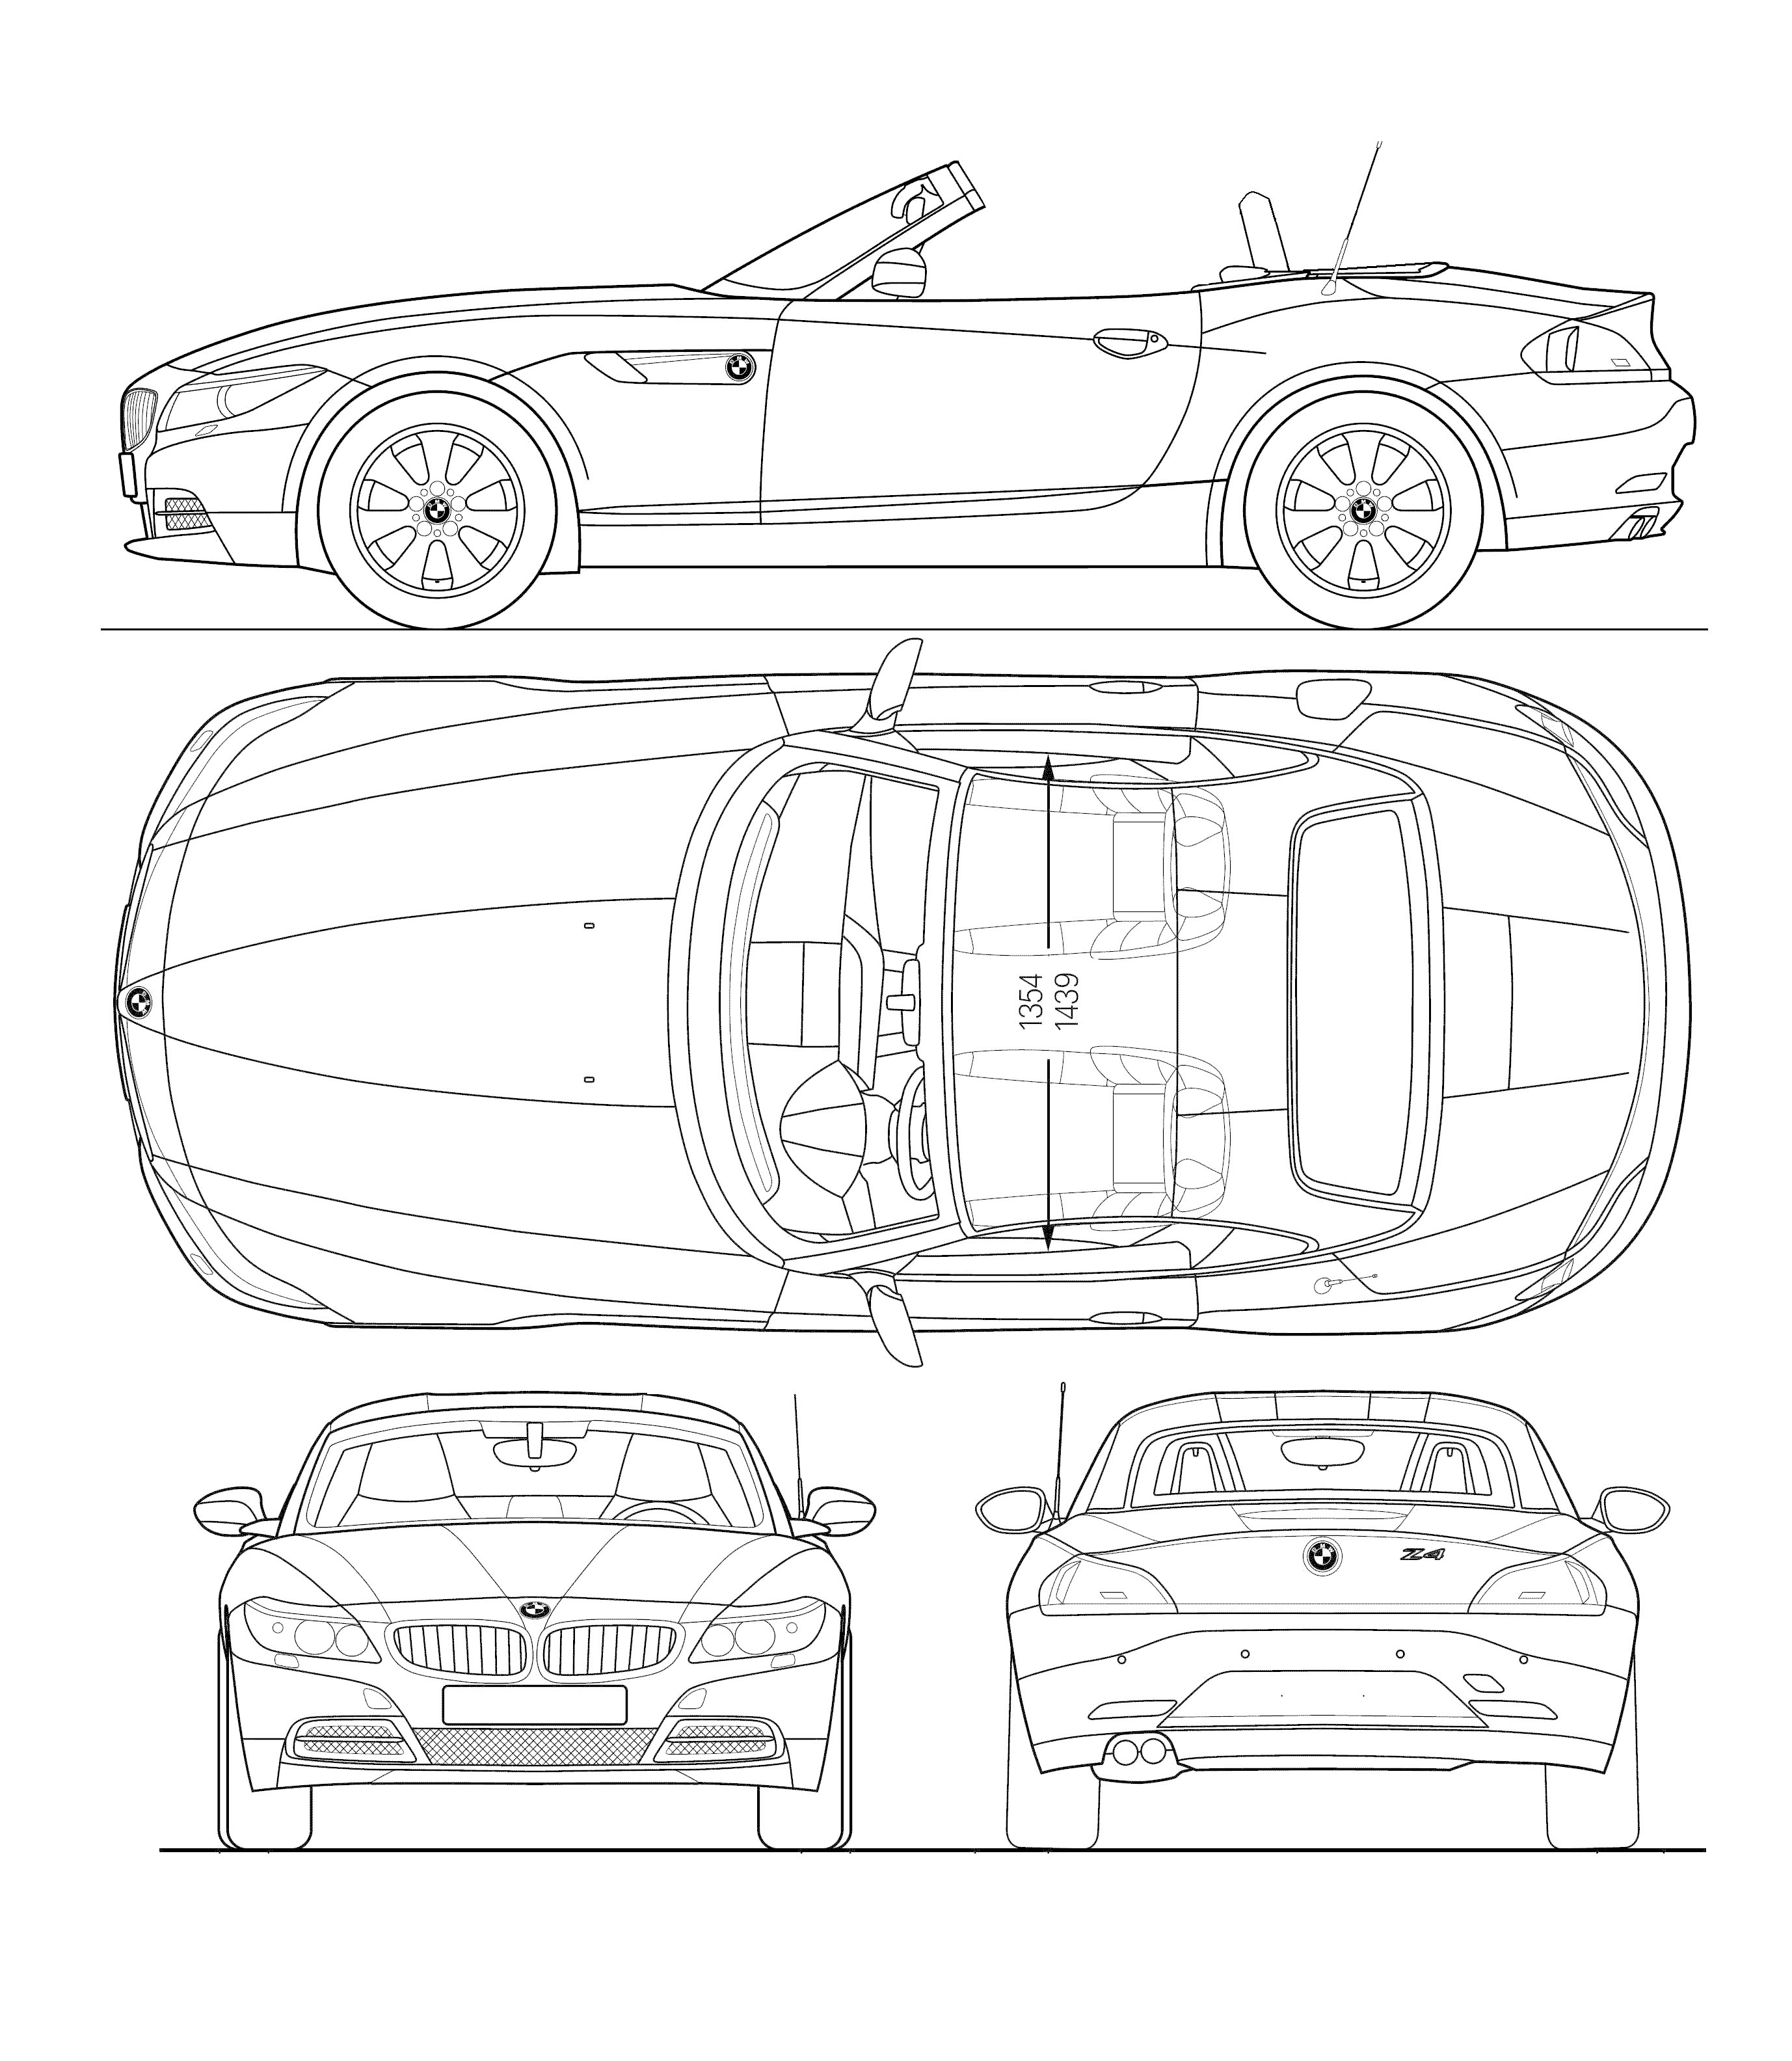 BMW Z4 E89 Cabriolet blueprint